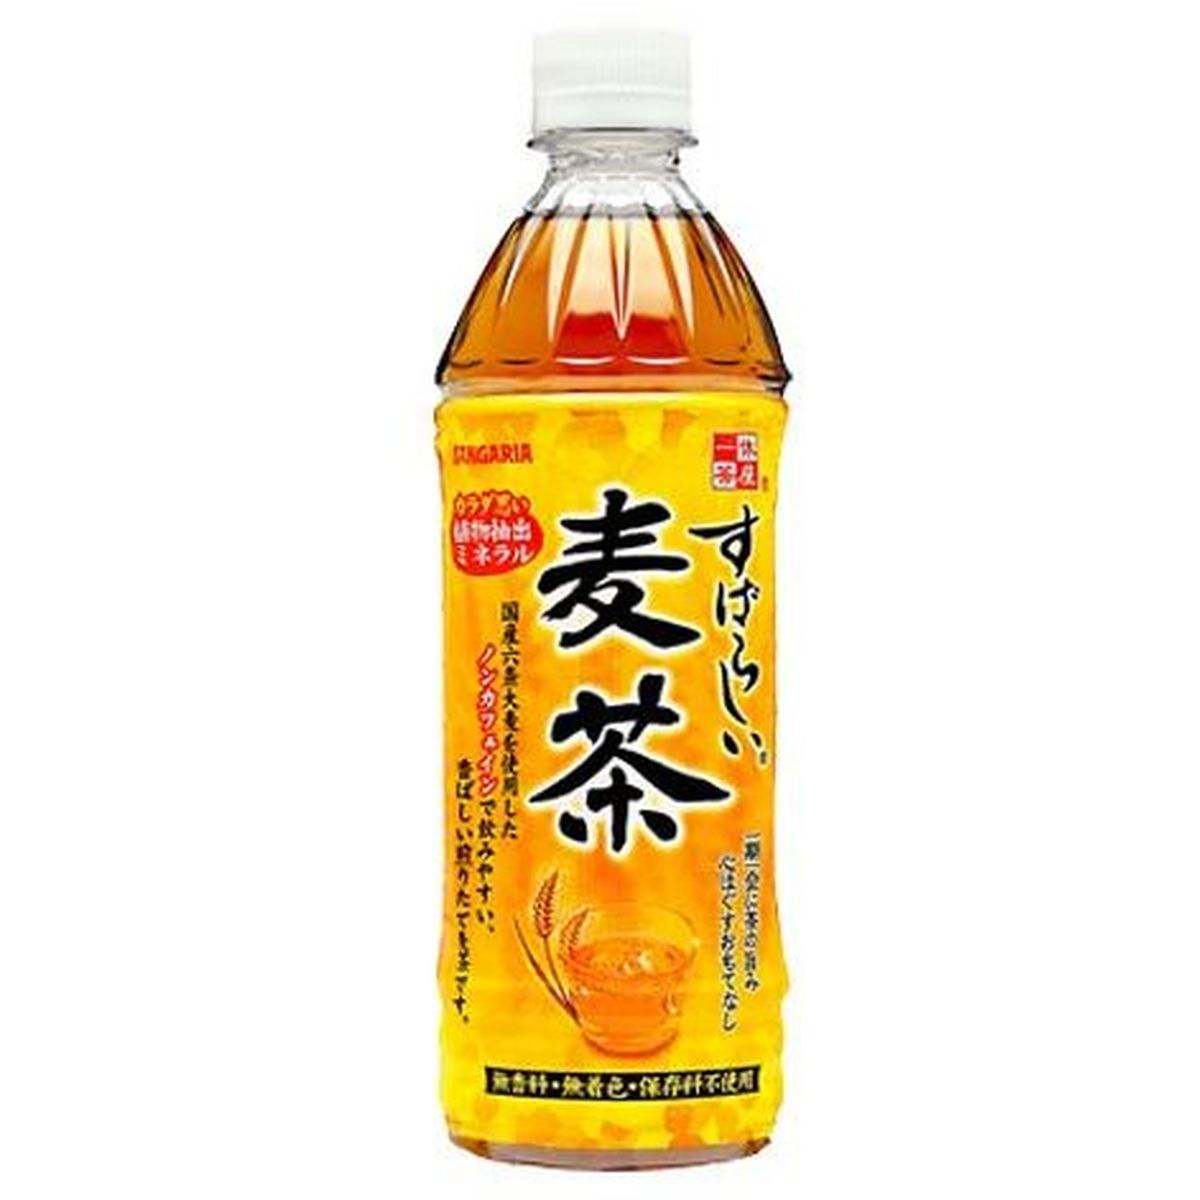 【24個入リ】サンガリア スバラシイ 麦茶 ペット 500ml